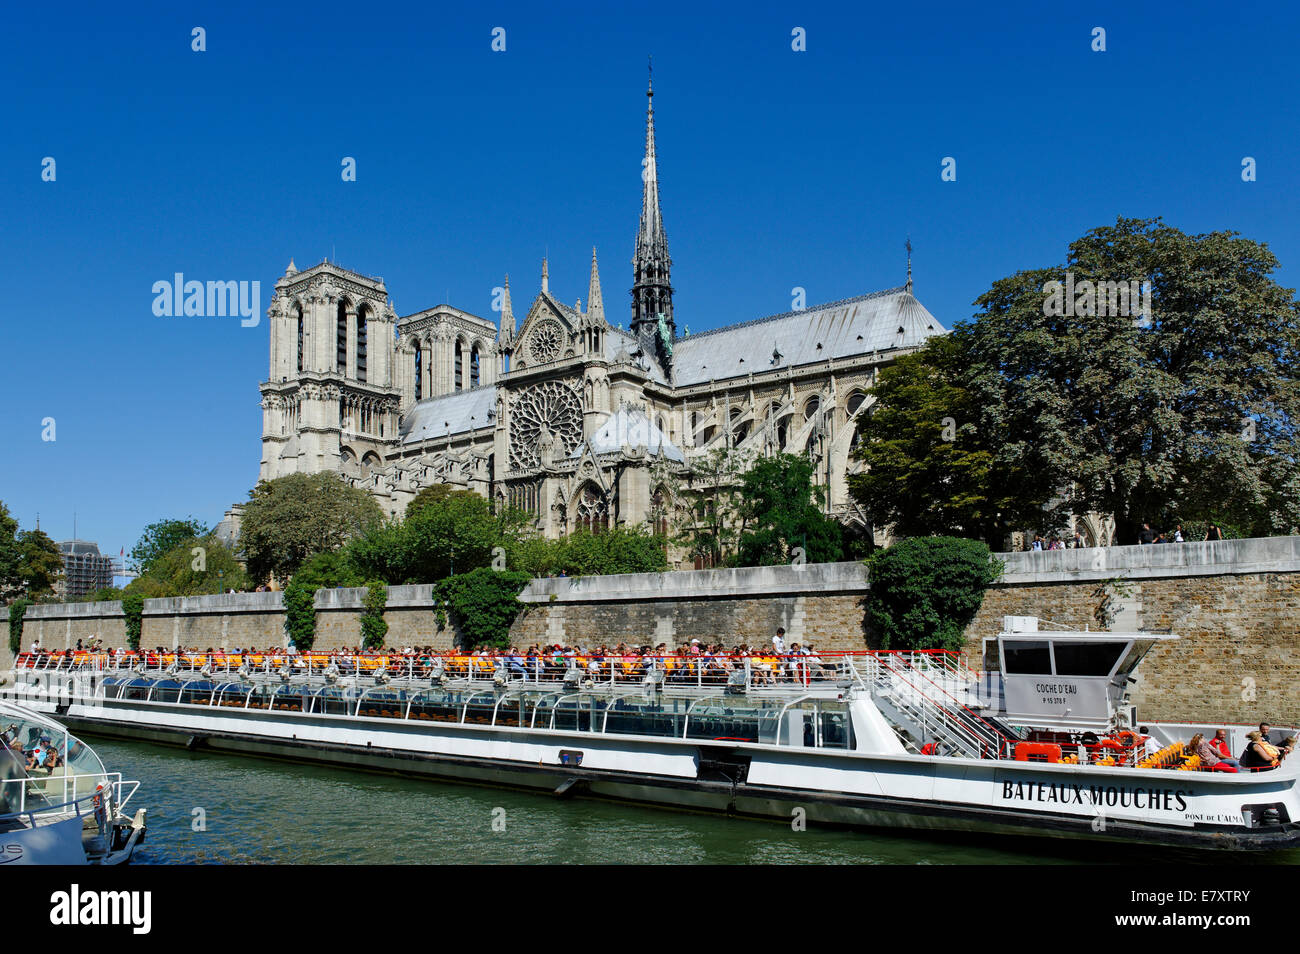 Excursión en barco por el Sena, Notre Dame de París o la Catedral de Notre-Dame, de la Ile de la Cité, 4th Arrondissement, París, Francia Foto de stock